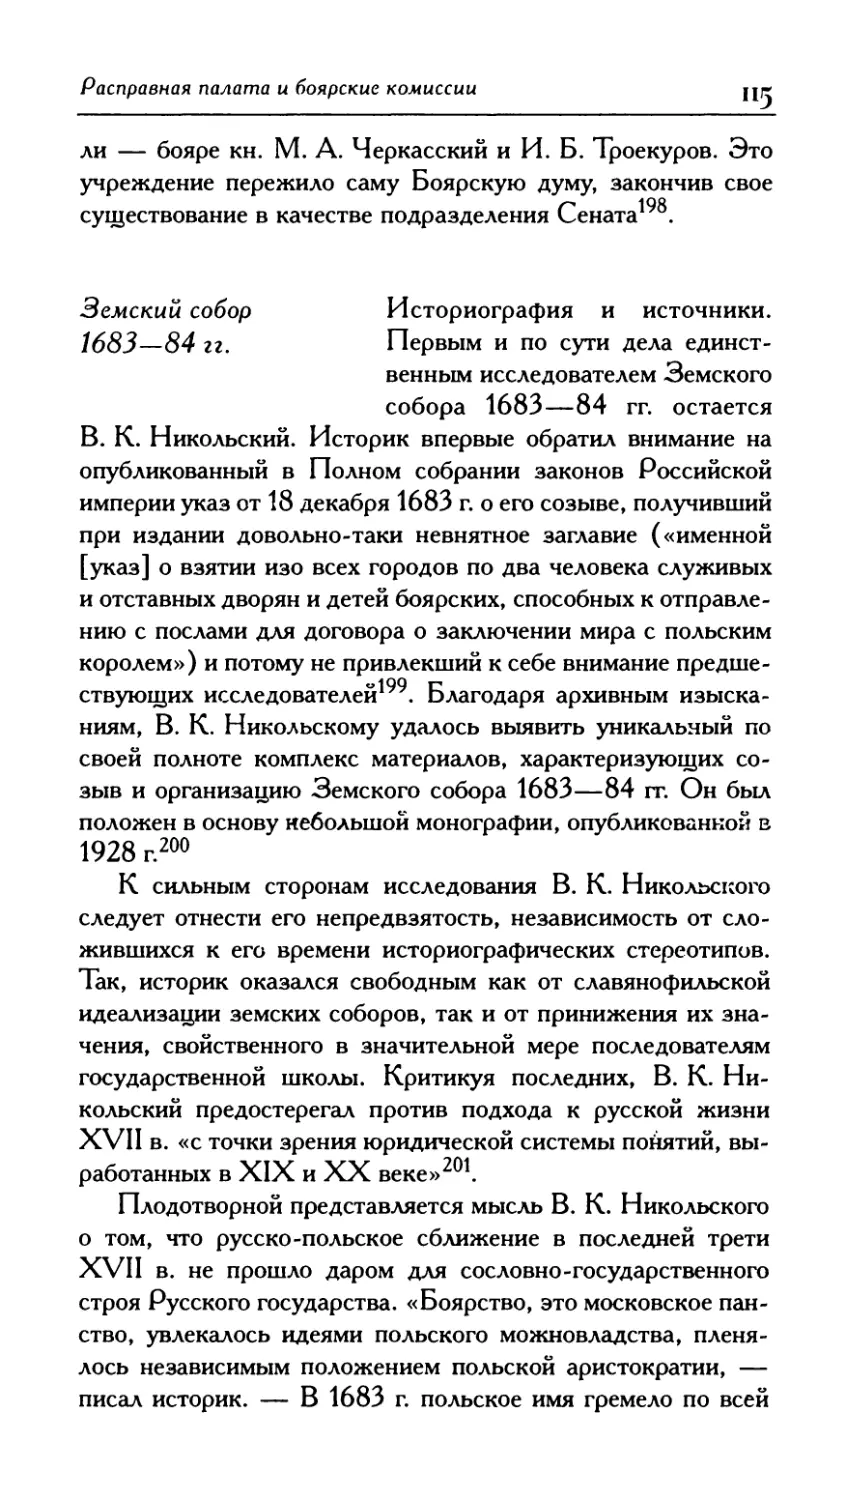 3. Земский собор 1683-84 гг